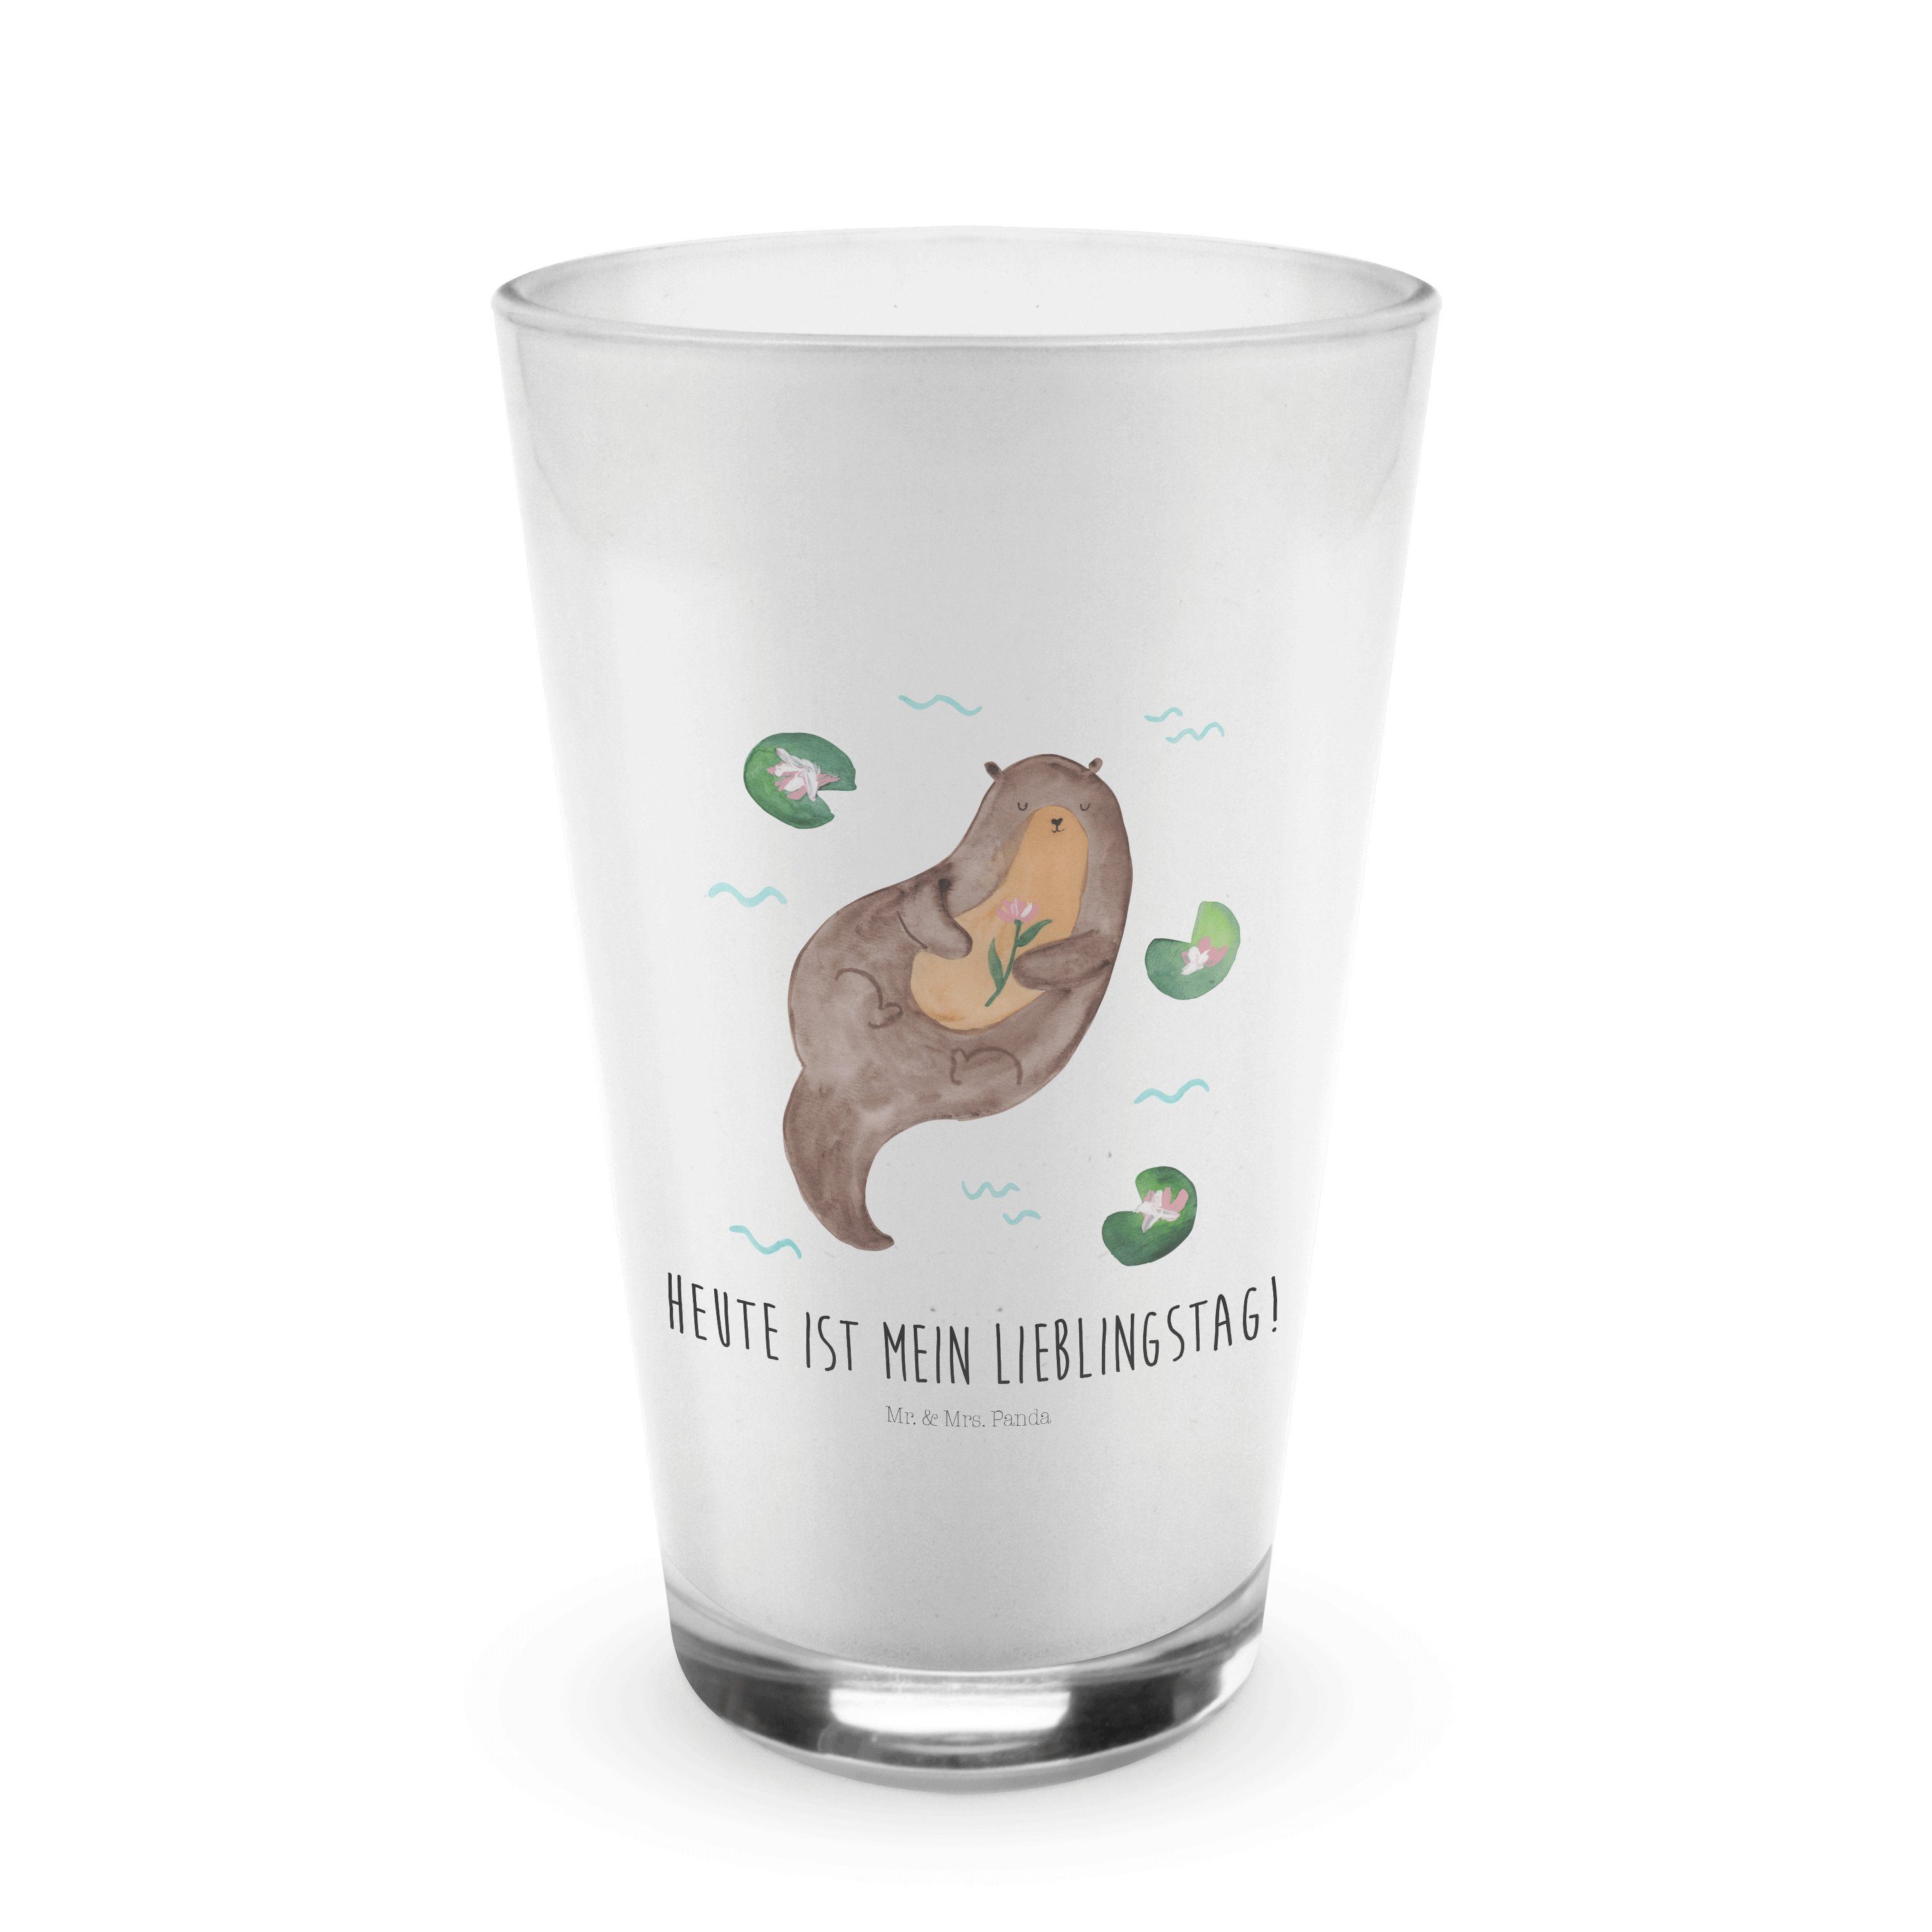 Mr. & Mrs. Panda Glas Transparent - Glas Otter mit Premium Seerose Fischott, - Glas, Cappuccino Geschenk